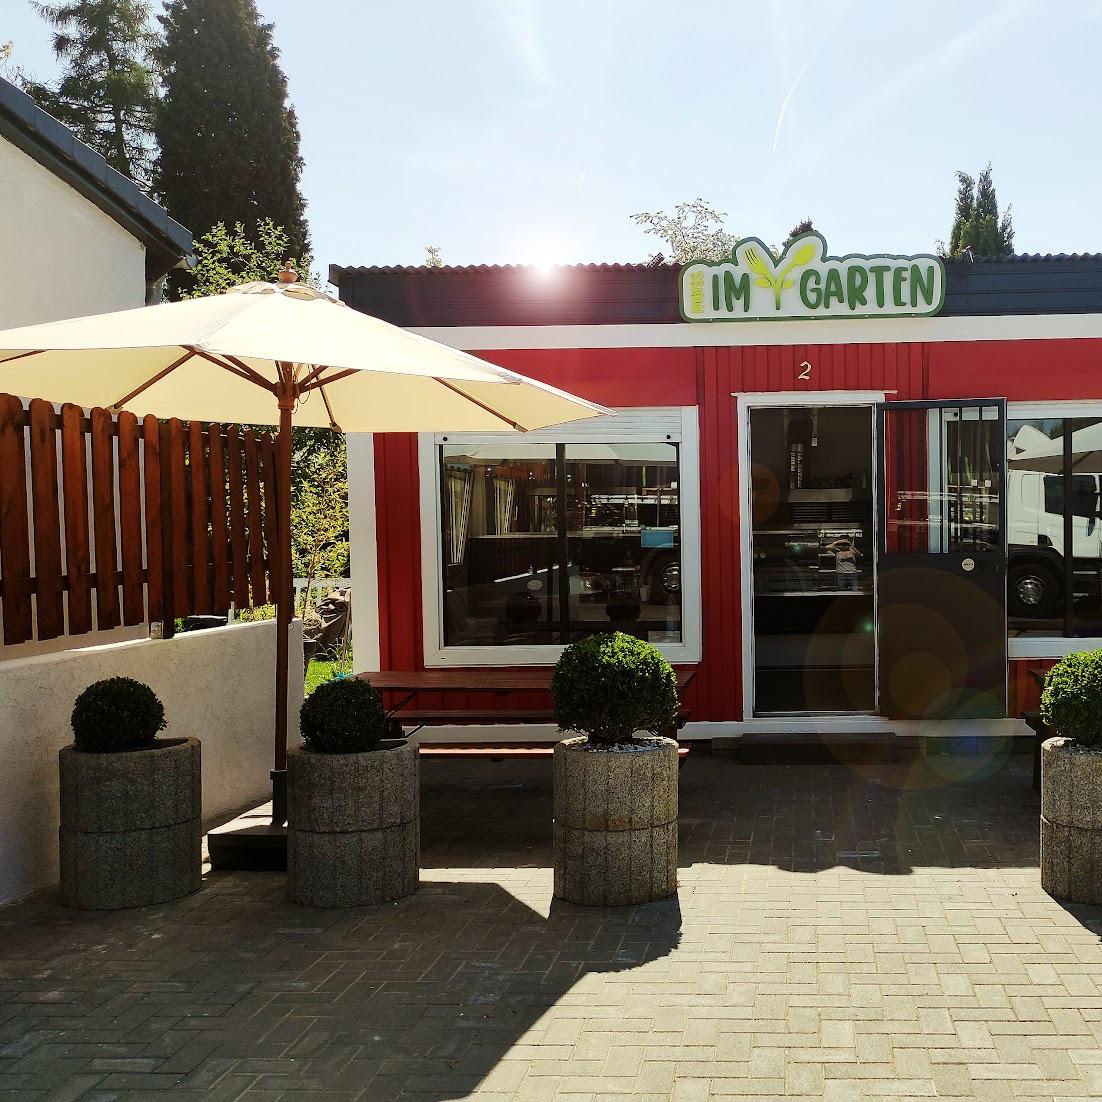 Restaurant "Imbiss Im Garten" in Mettmann